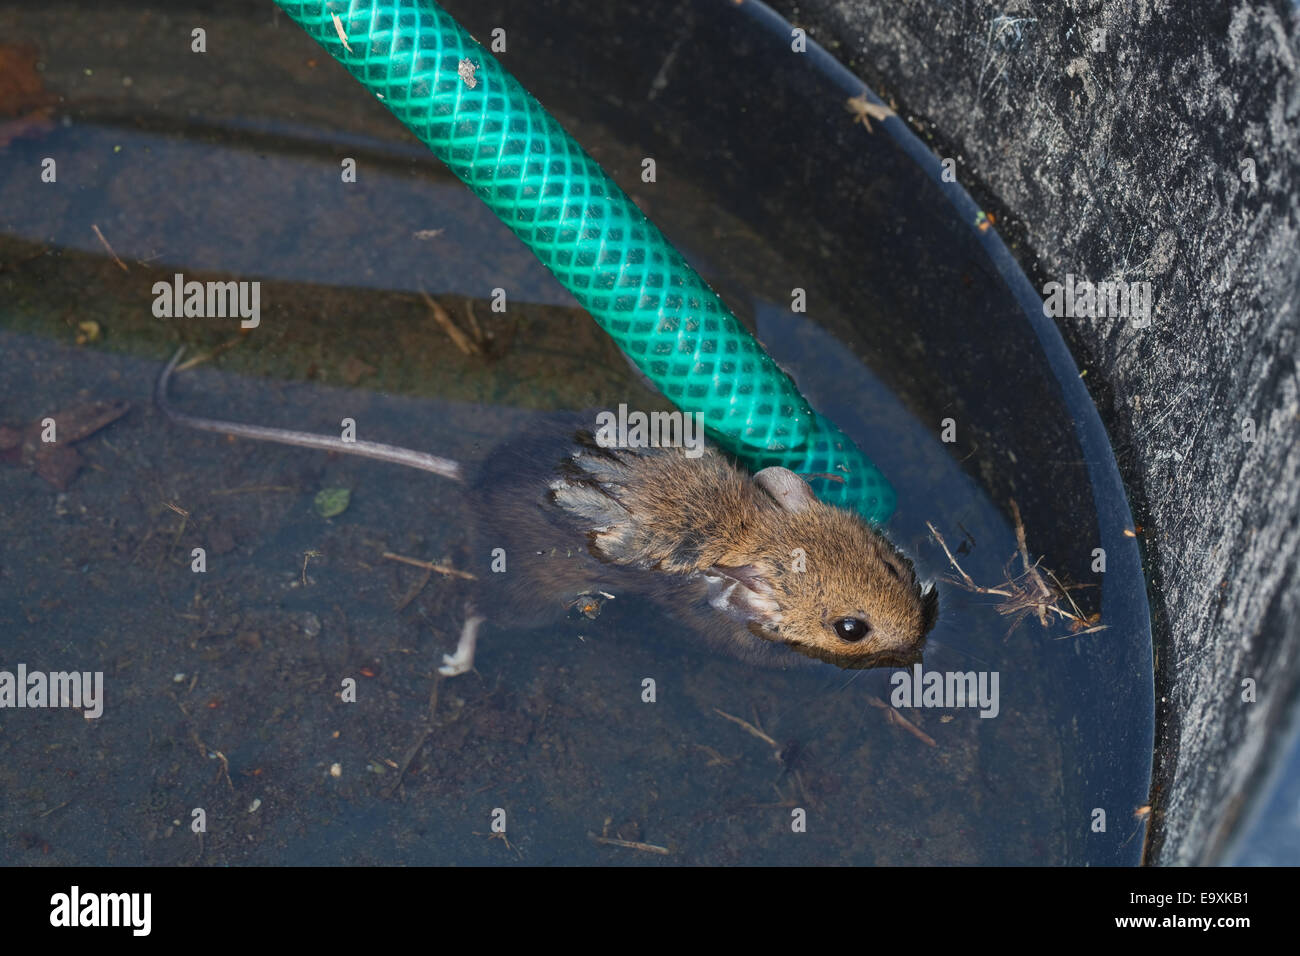 Ratón de madera o de larga cola de ratón de campo (Apodemus sylvaticus). Se ahogó. Capaz nadar este ratón no pudo rescatar a sí mismo. Foto de stock